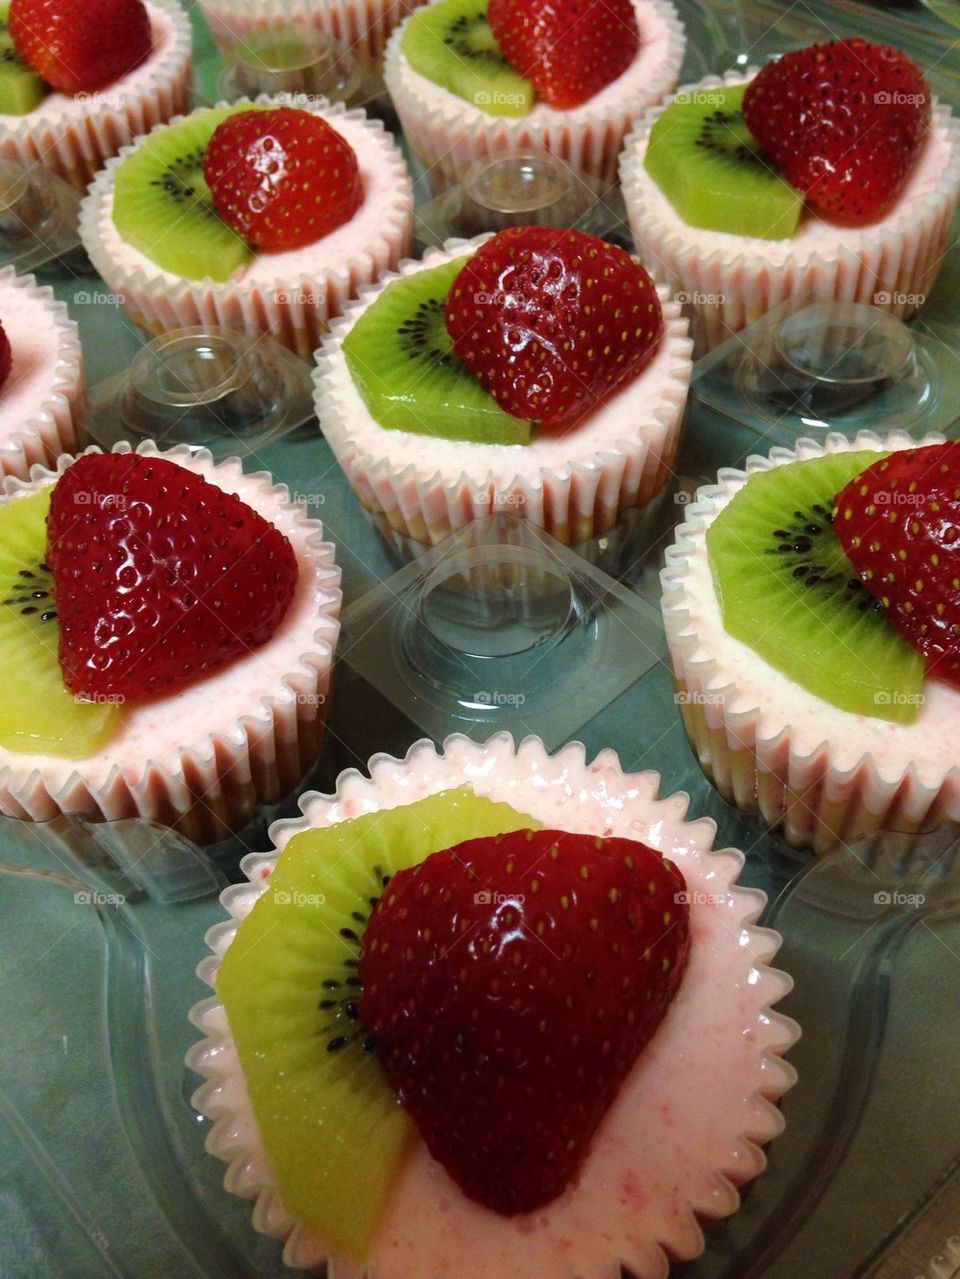 Strawberry daiquiri cheesecake cupcakes